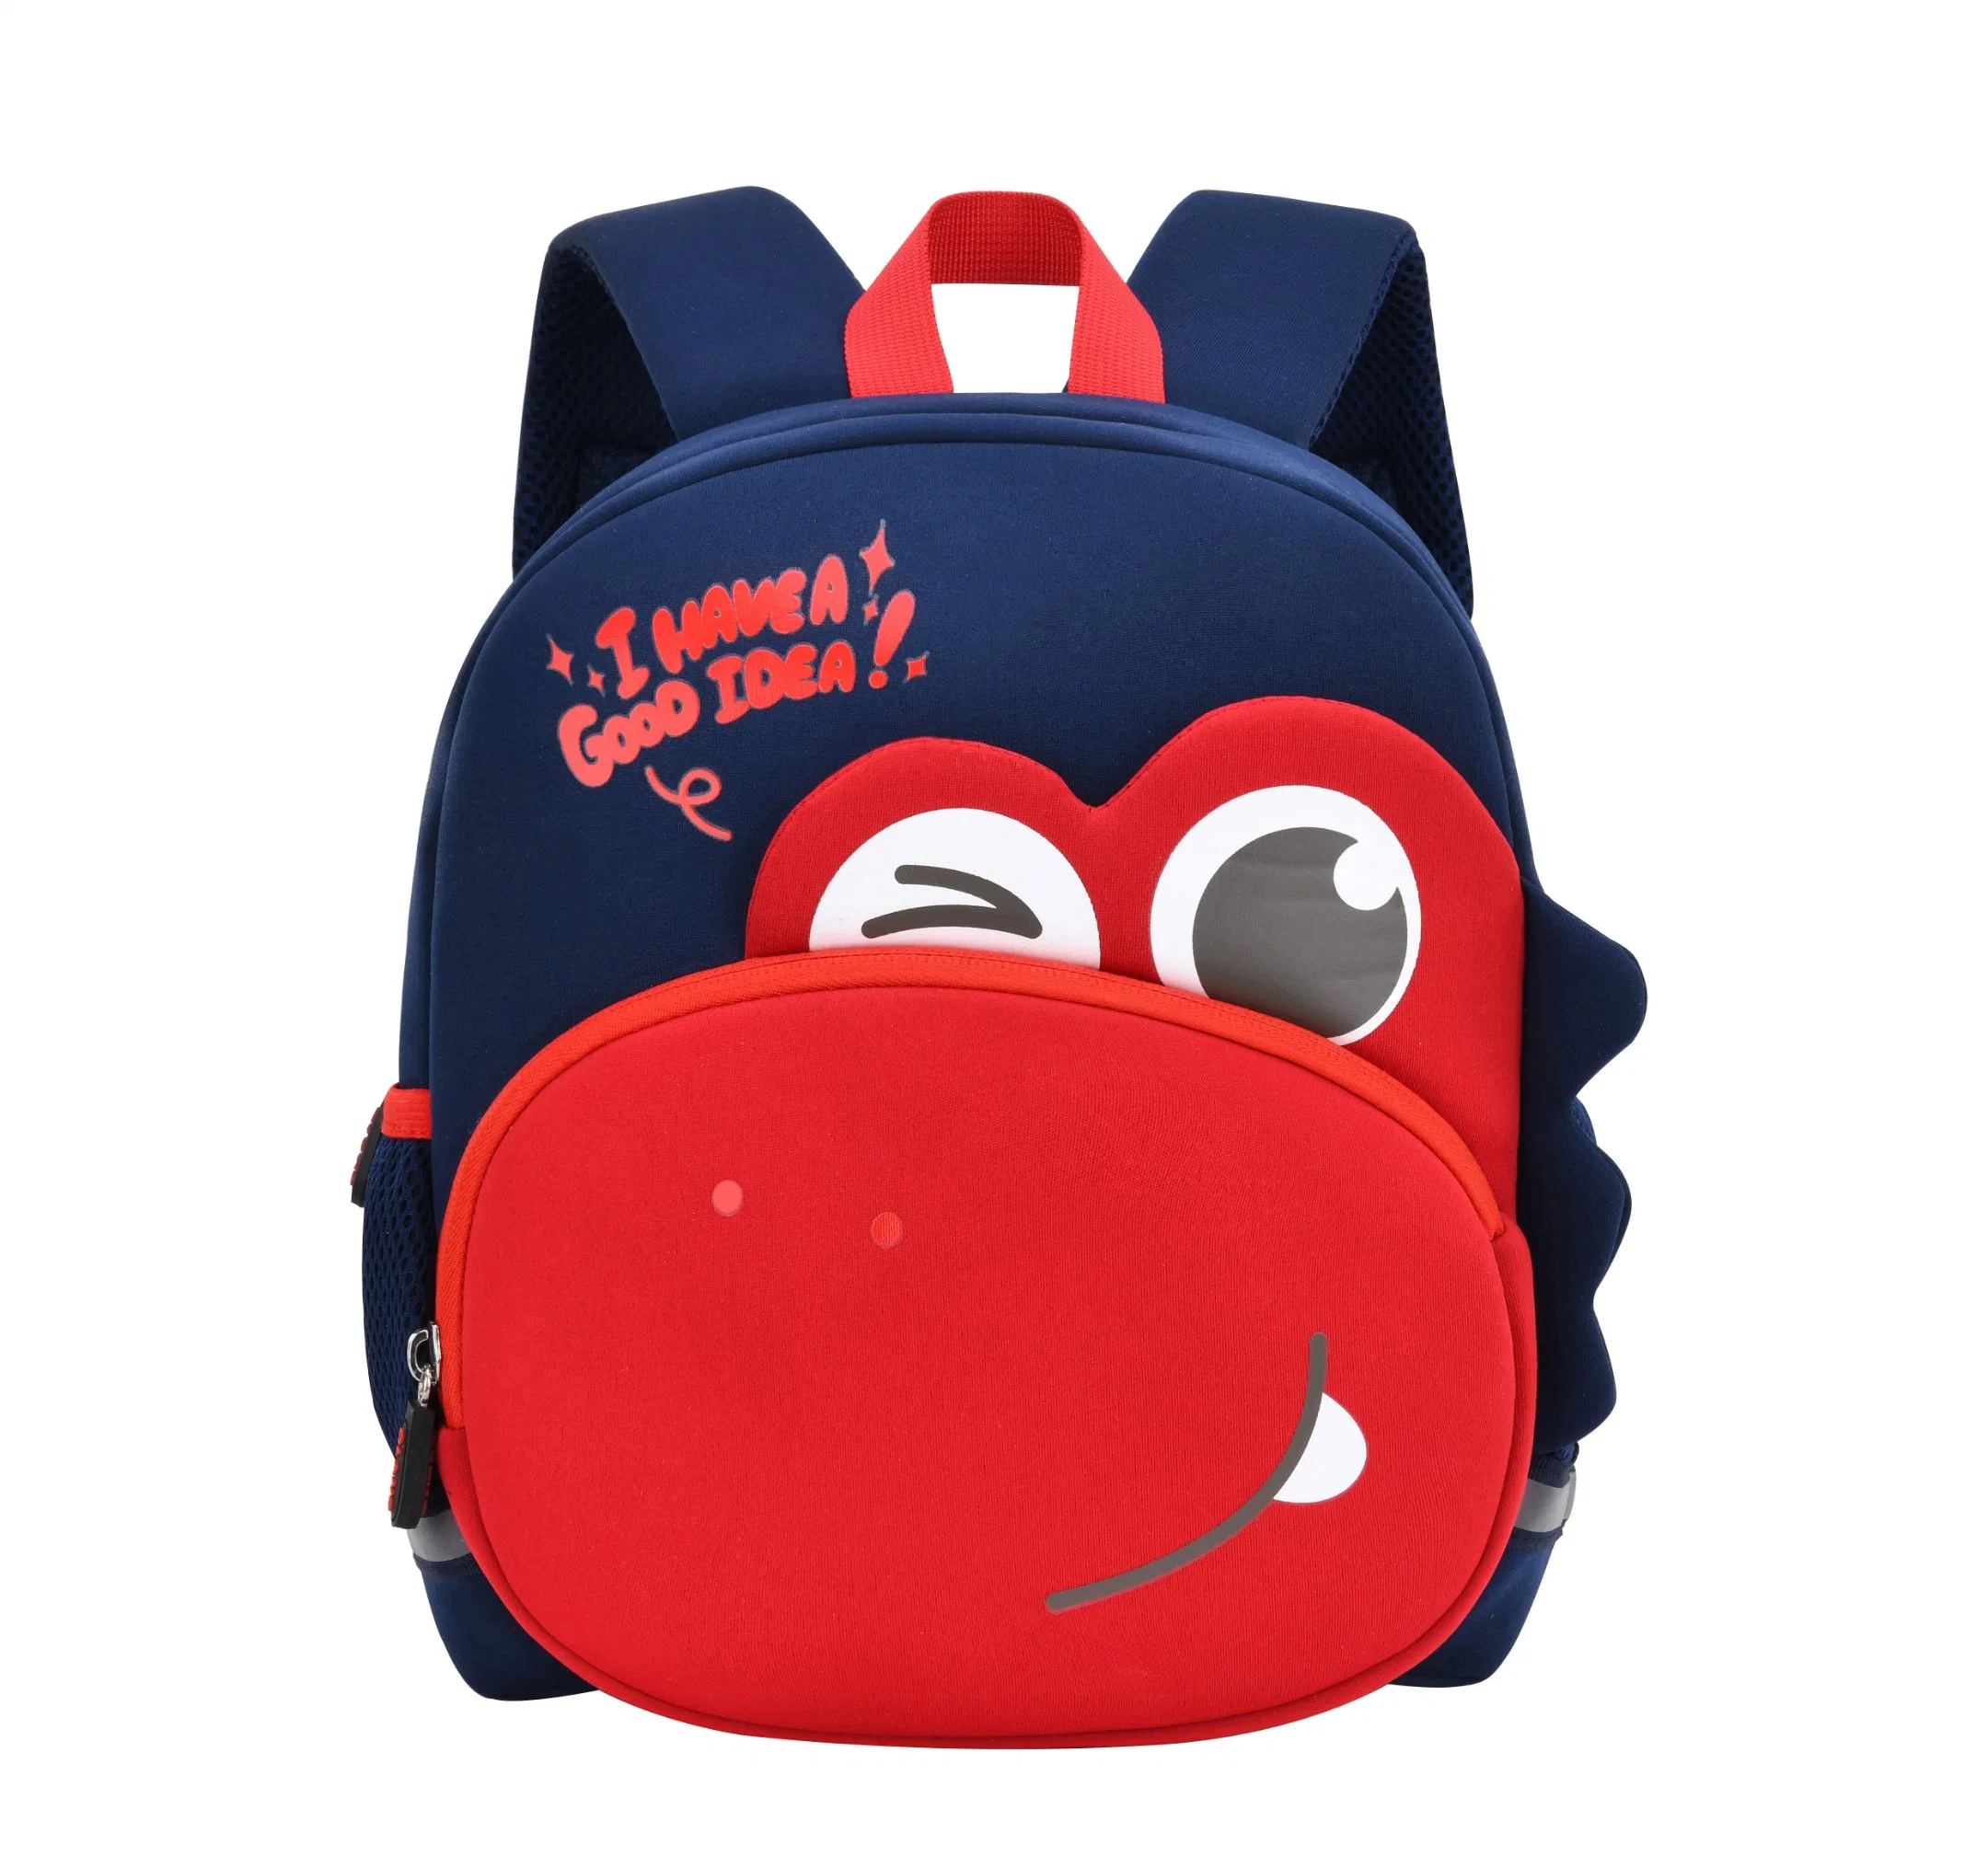 Animal Kids Backpack Lightweight Children&prime; S School Bag Travel Rucksack for Kindergarten Preschool Boys Girls